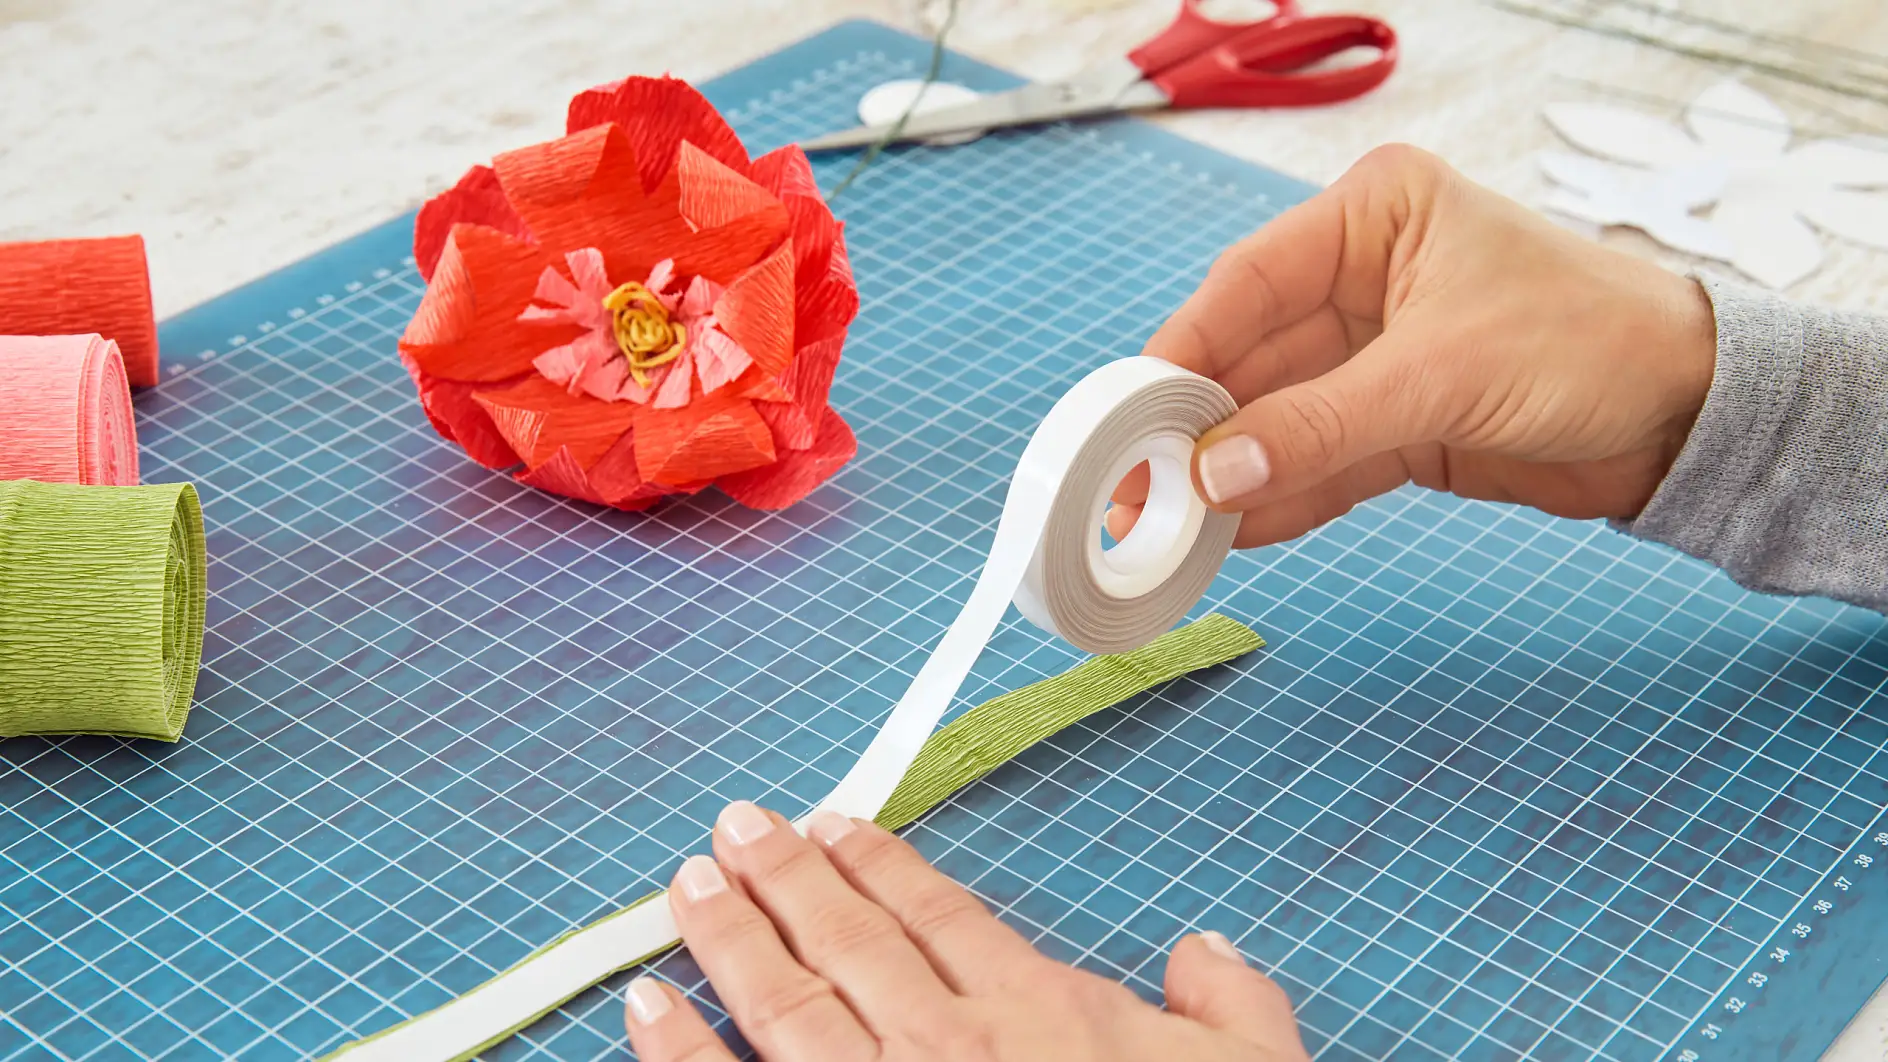 DIY Paper Flower / Step 8: Affix